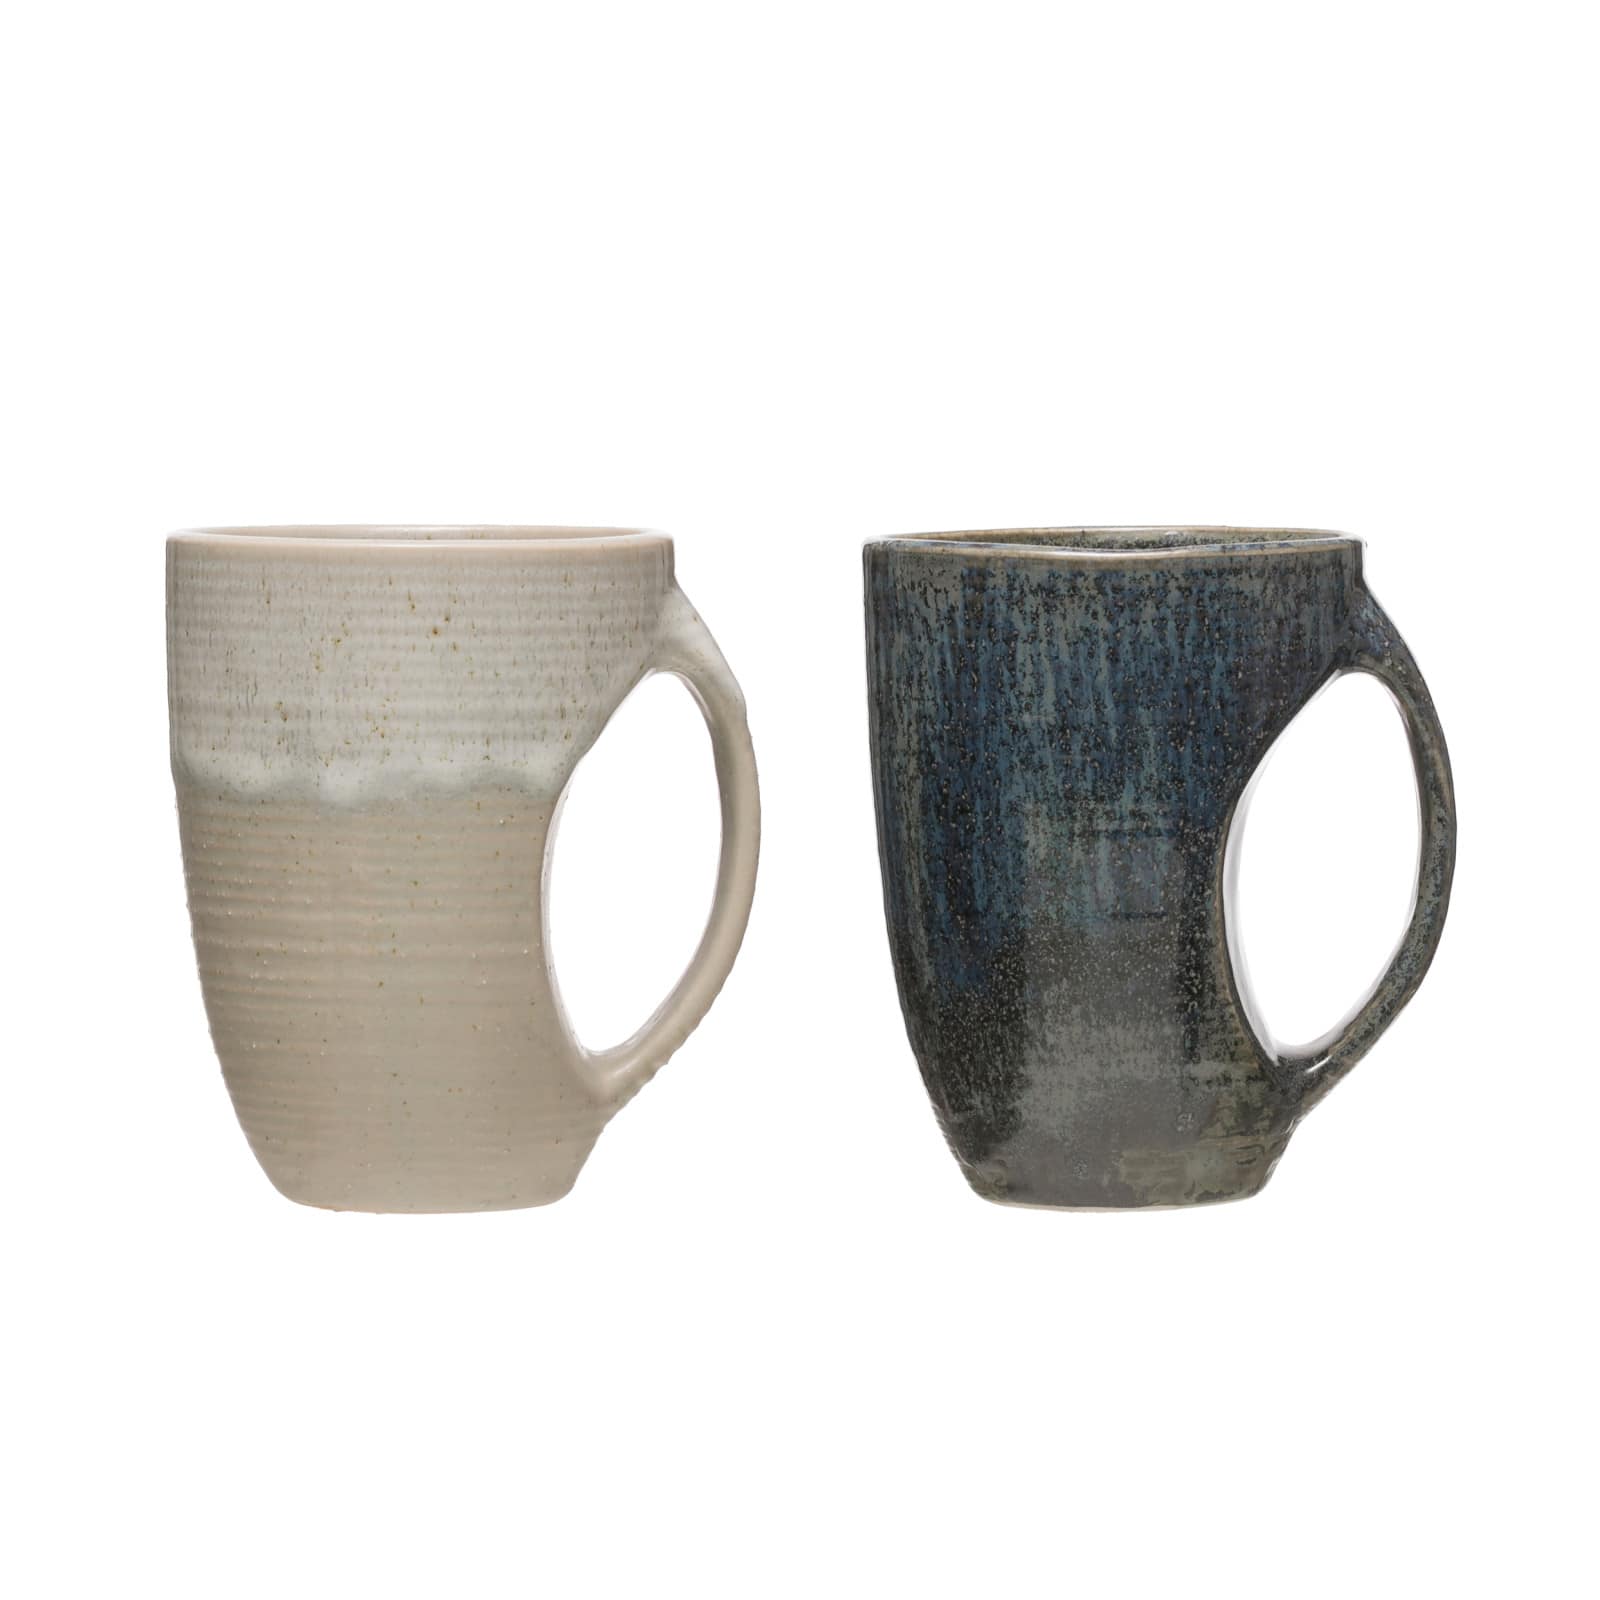 12oz. Glazed Stoneware Mug with Grip Indent Set, 2ct.